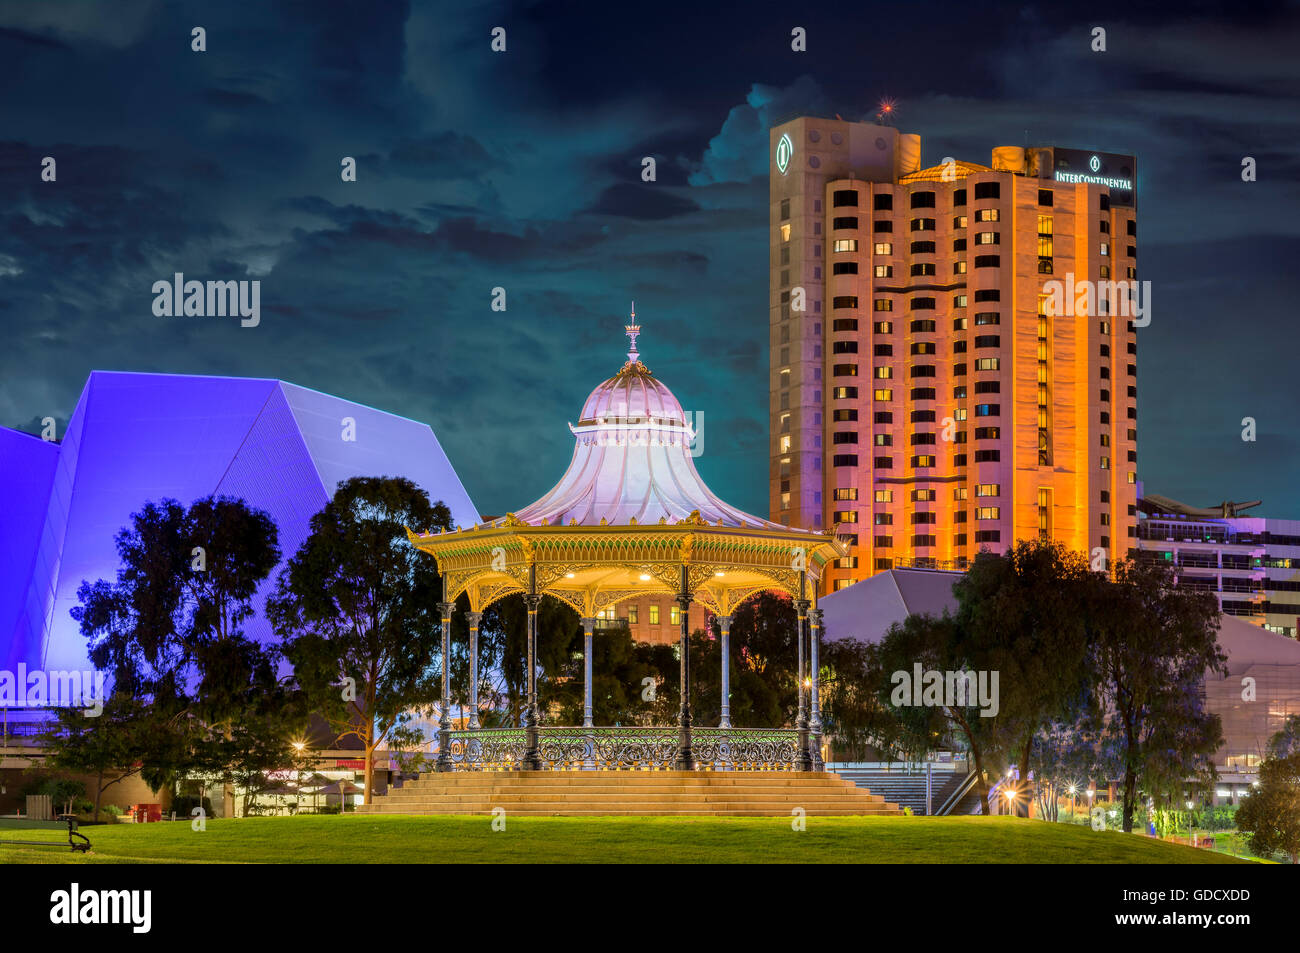 Adelaides Skyline bei Nacht mit der wunderschönen Elder Park Rotunde, das Festival Centre & Intercontinental Hotel Stockfoto